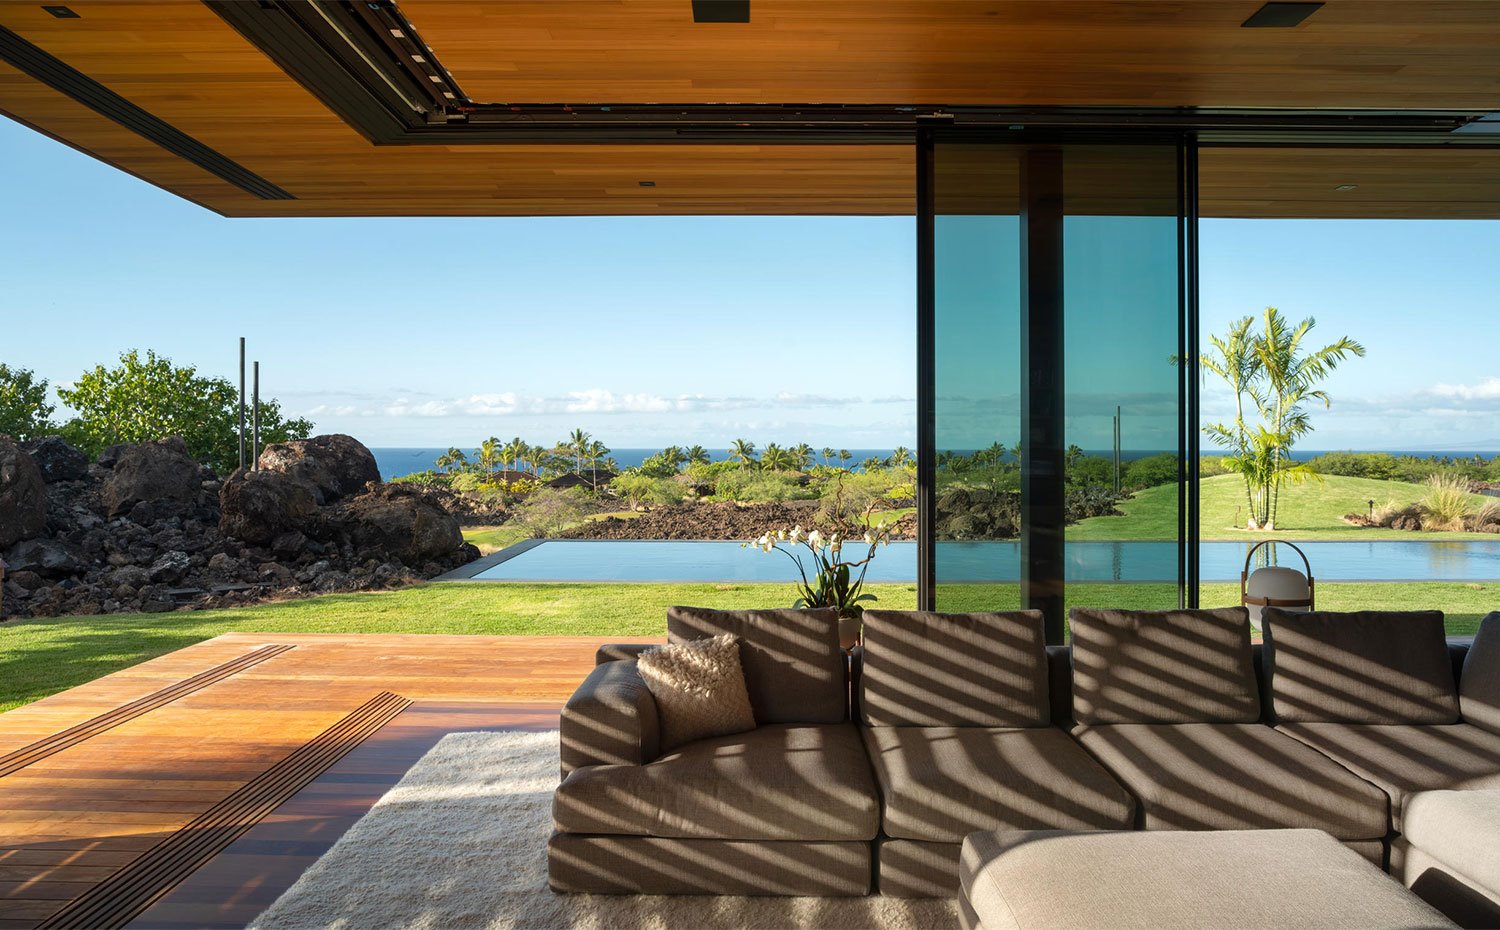 Sofá en gris sobre alfombra en color crudo de salón que se abre al exterior, junto a piscina y vistas al mar